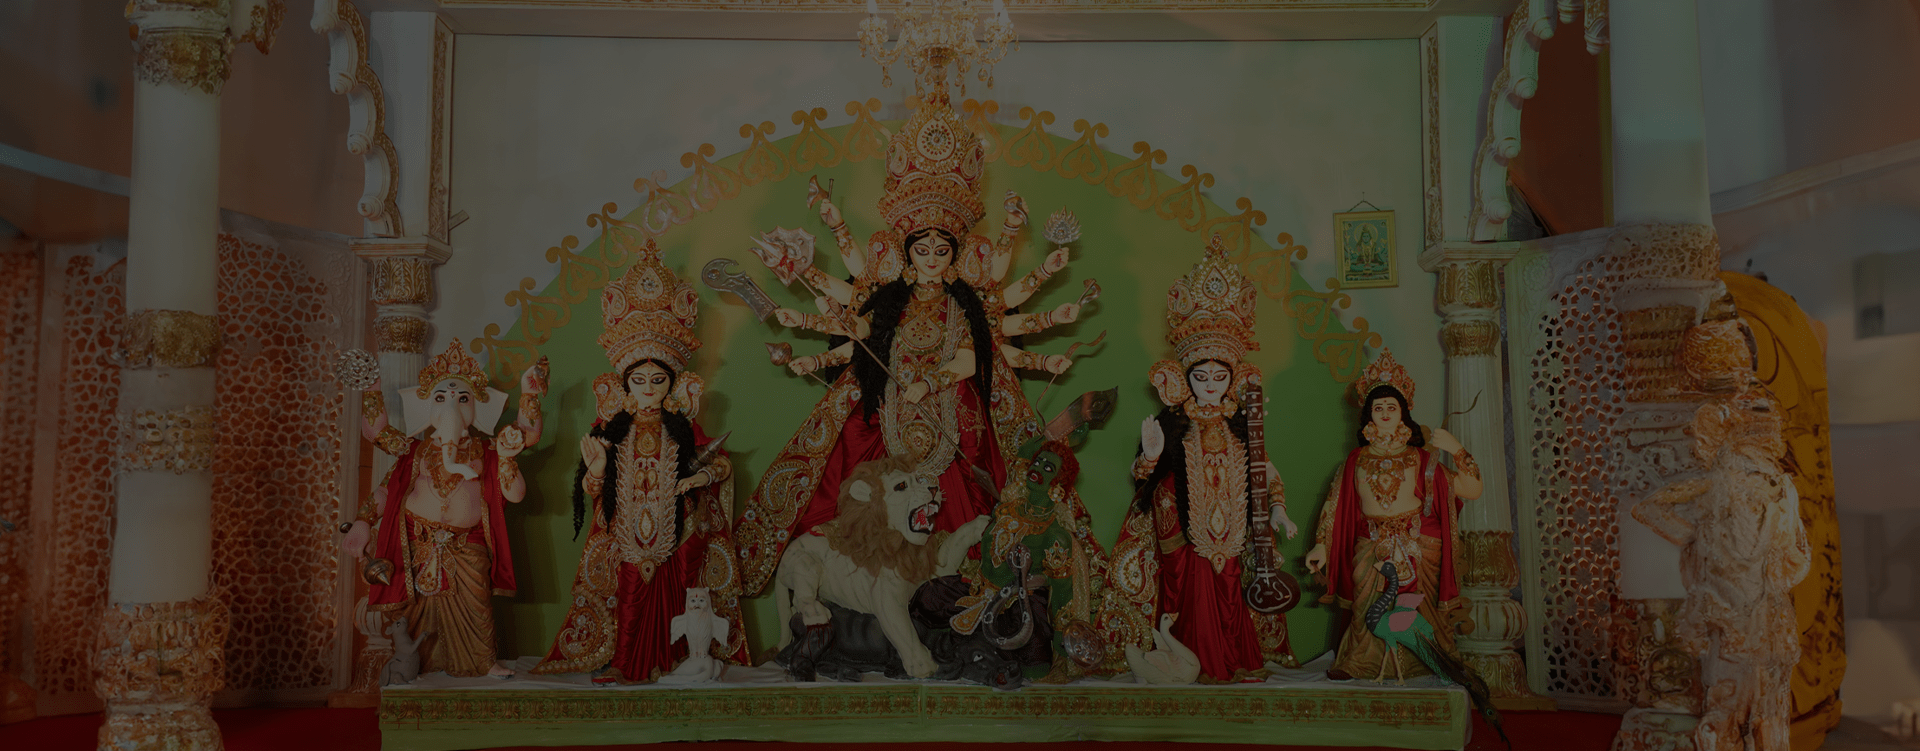 Bombay Durga Bari Samiti